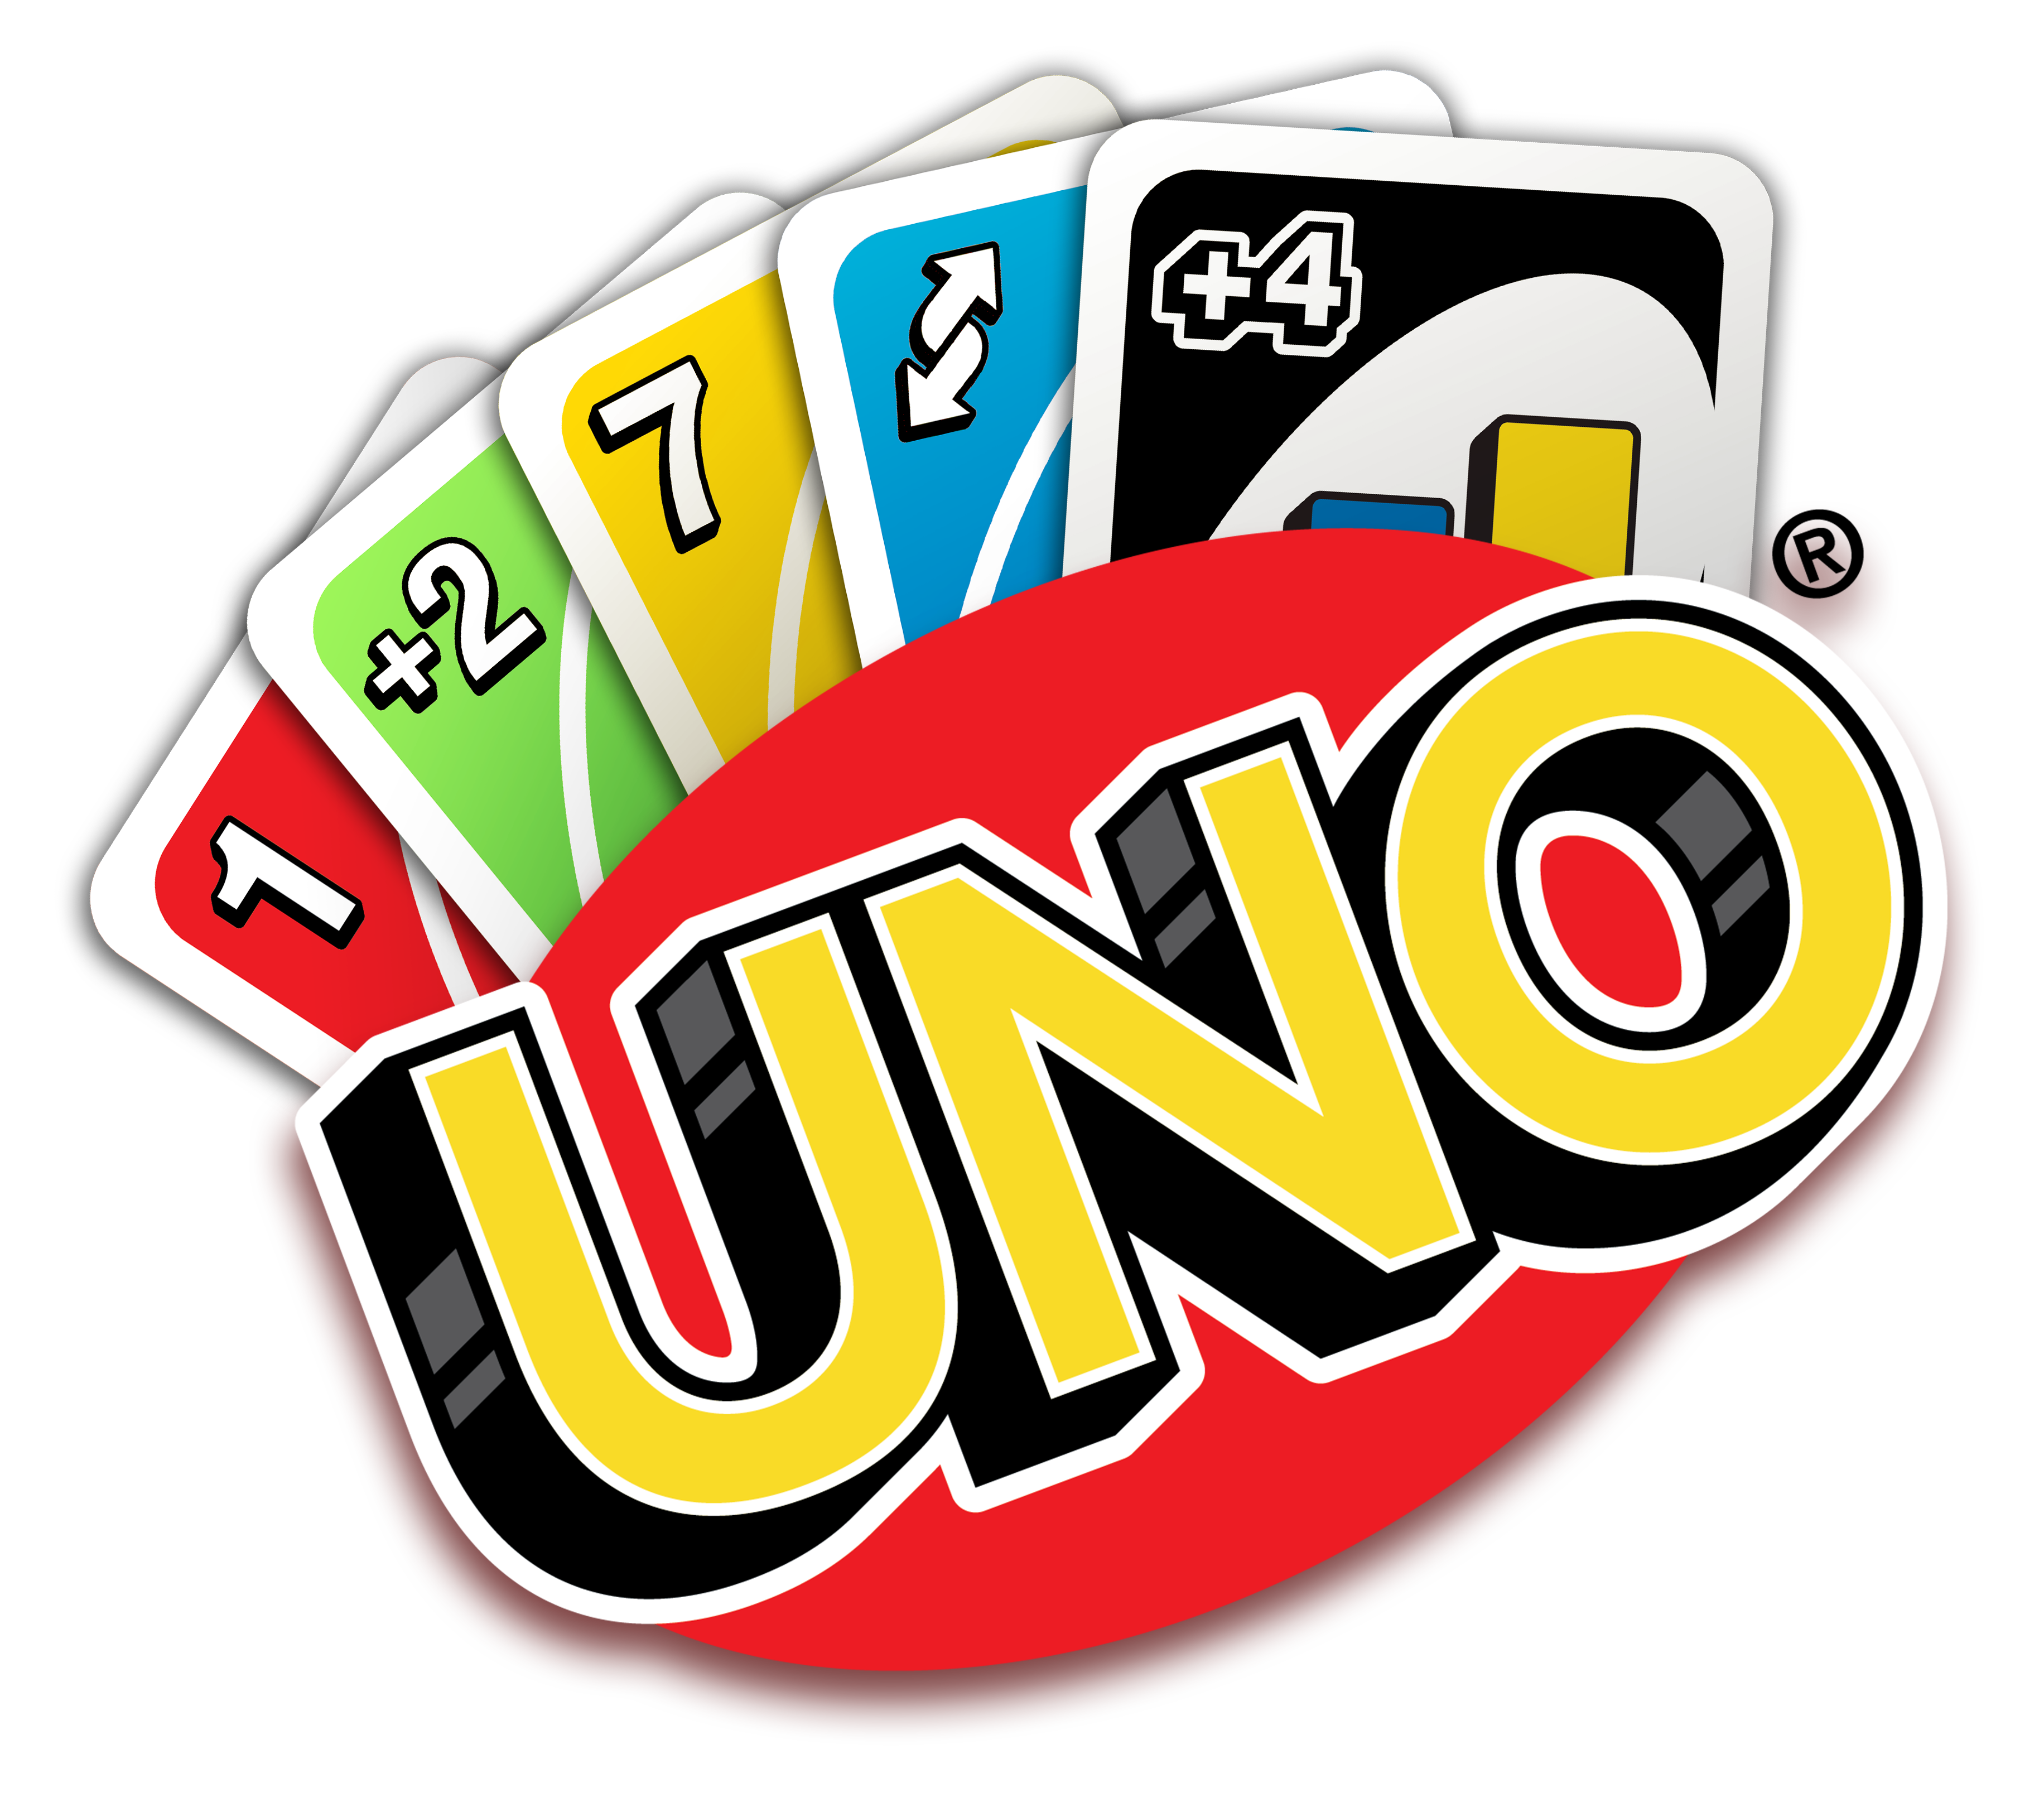 Với hình ảnh Emblem Area Onecard Phase Uno HQ PNG, bạn sẽ có một cái nhìn rõ nét hơn về những lá bài Uno độc đáo. Tuyệt vời cho những người muốn khám phá và tìm hiểu về trò chơi thú vị này!